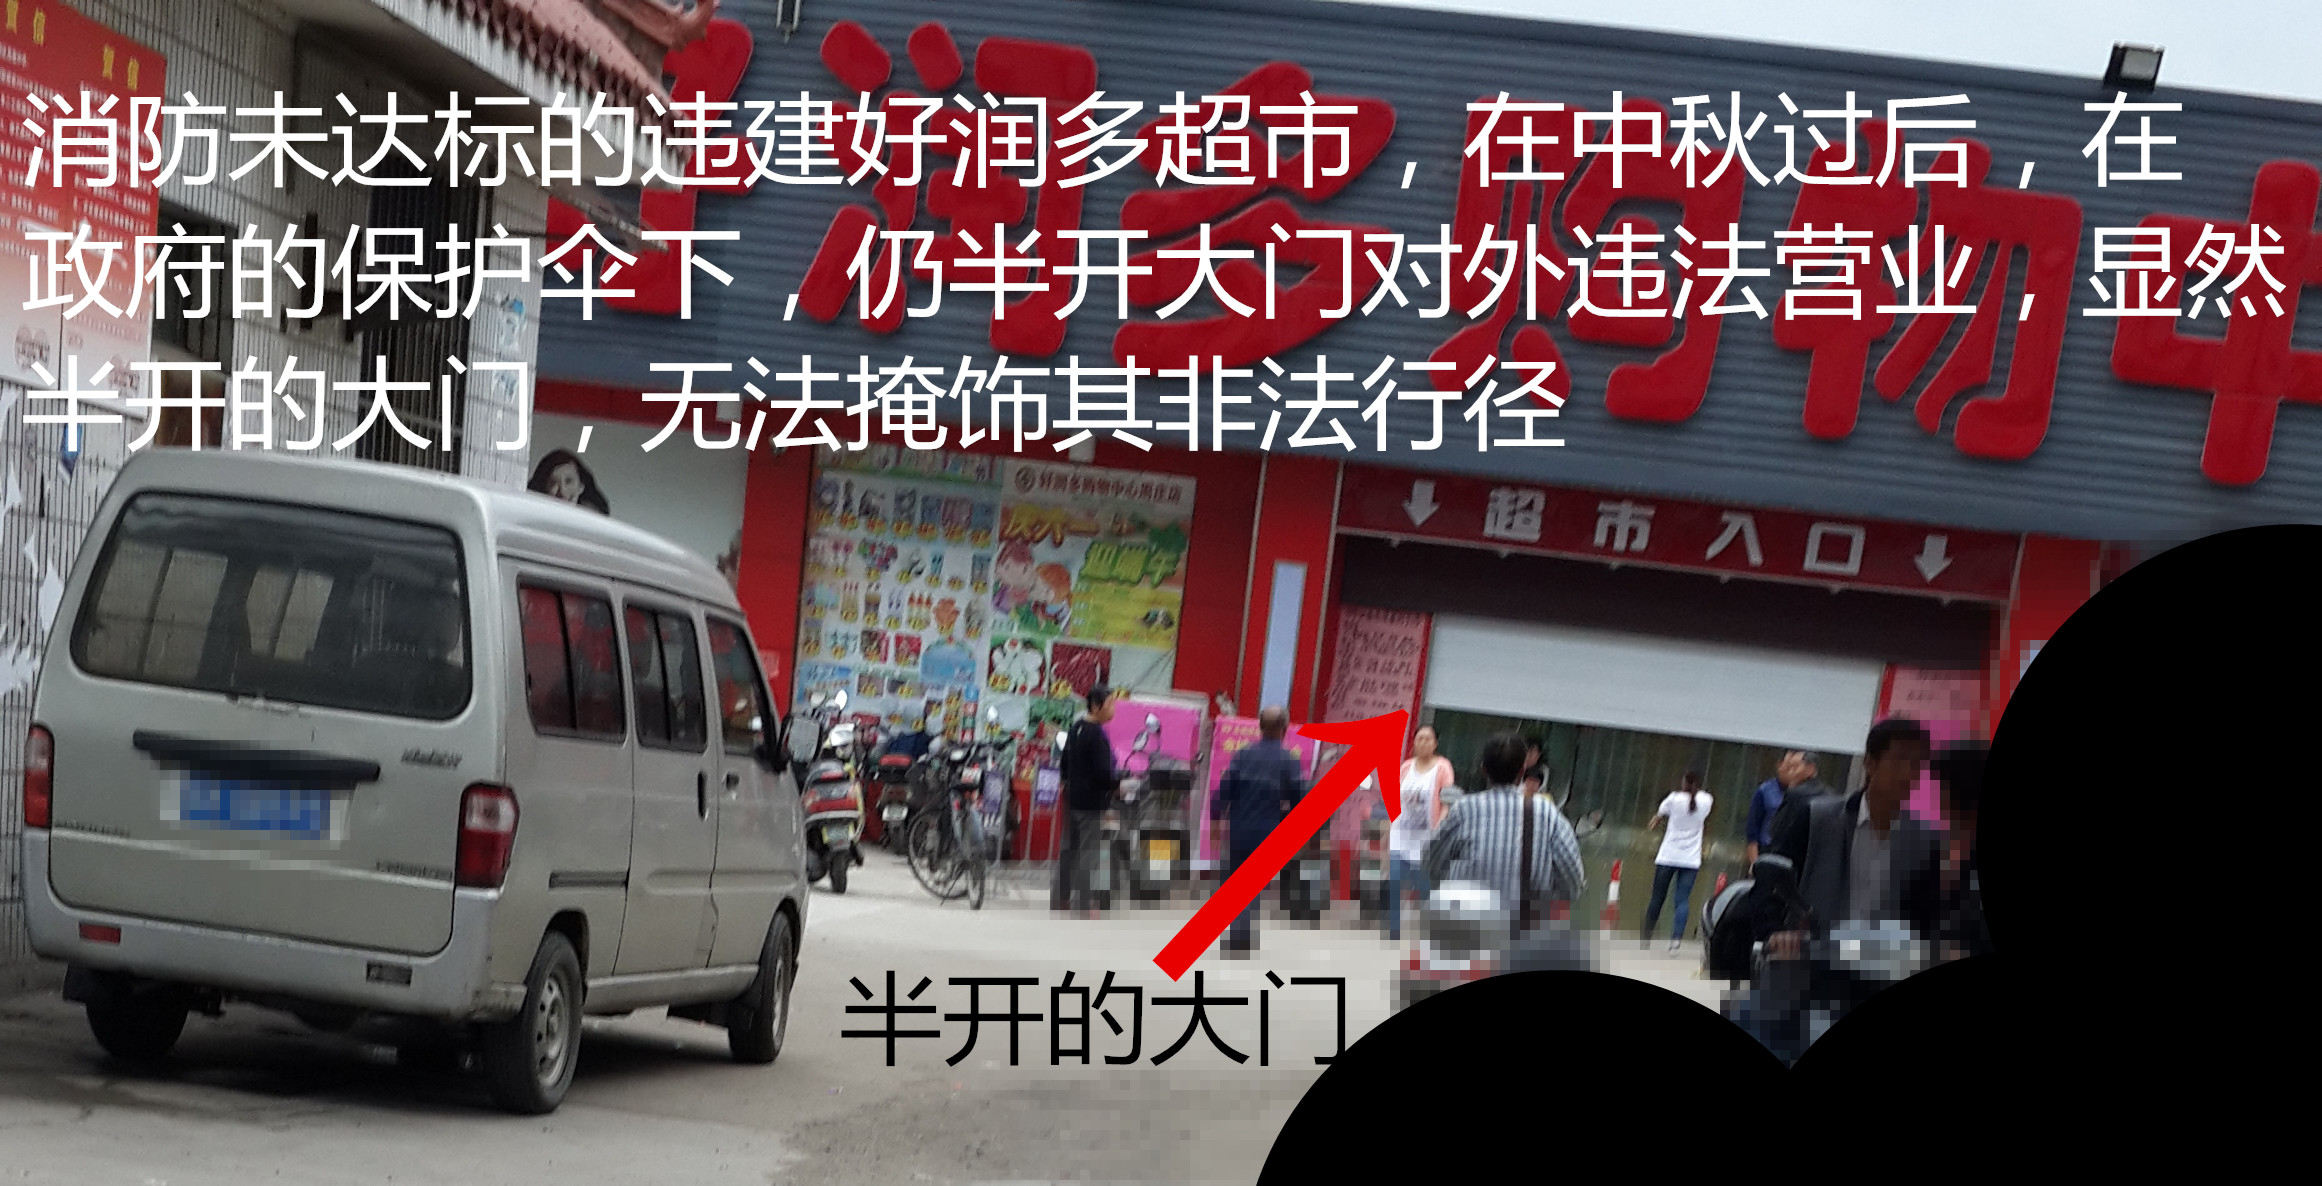 关于江苏泰州兴化好润多超市,违建火患单位,消